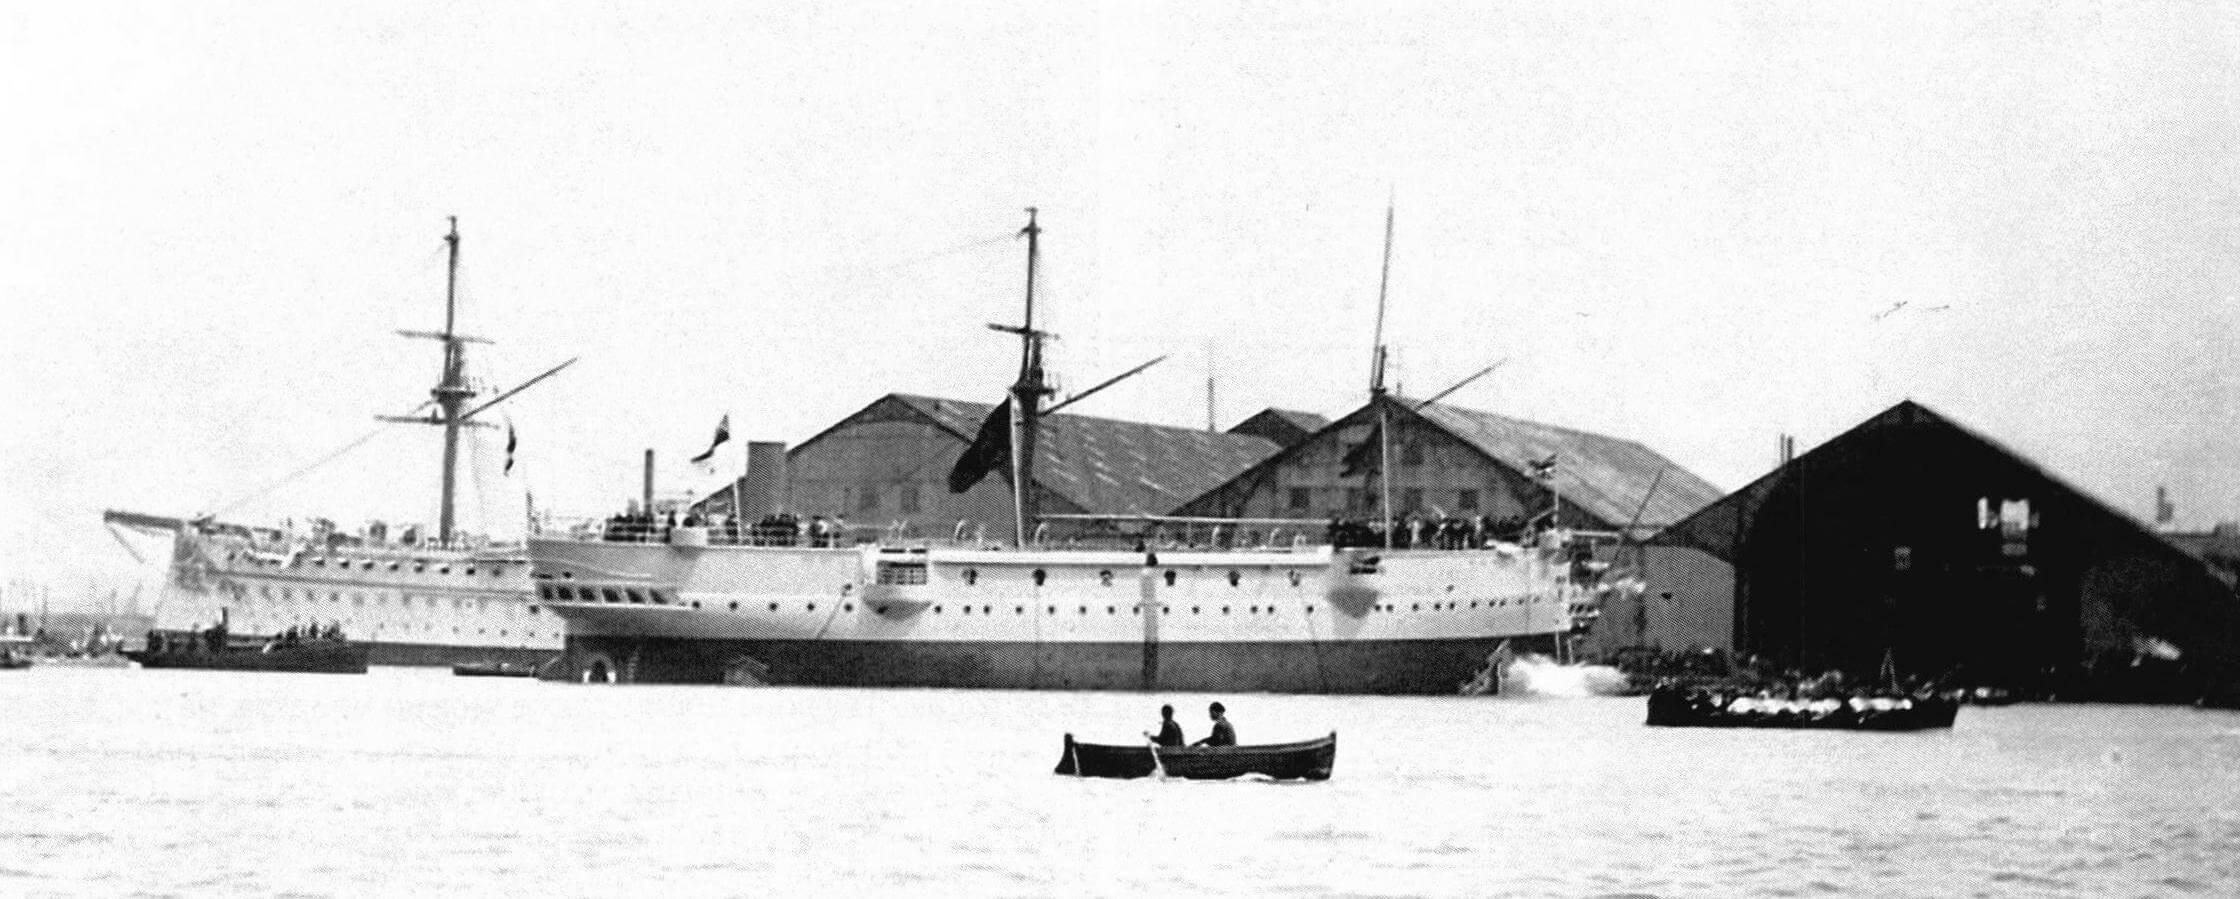 Момент спуска на воду корвета «Каллиопа» 24 июня 1884 г.